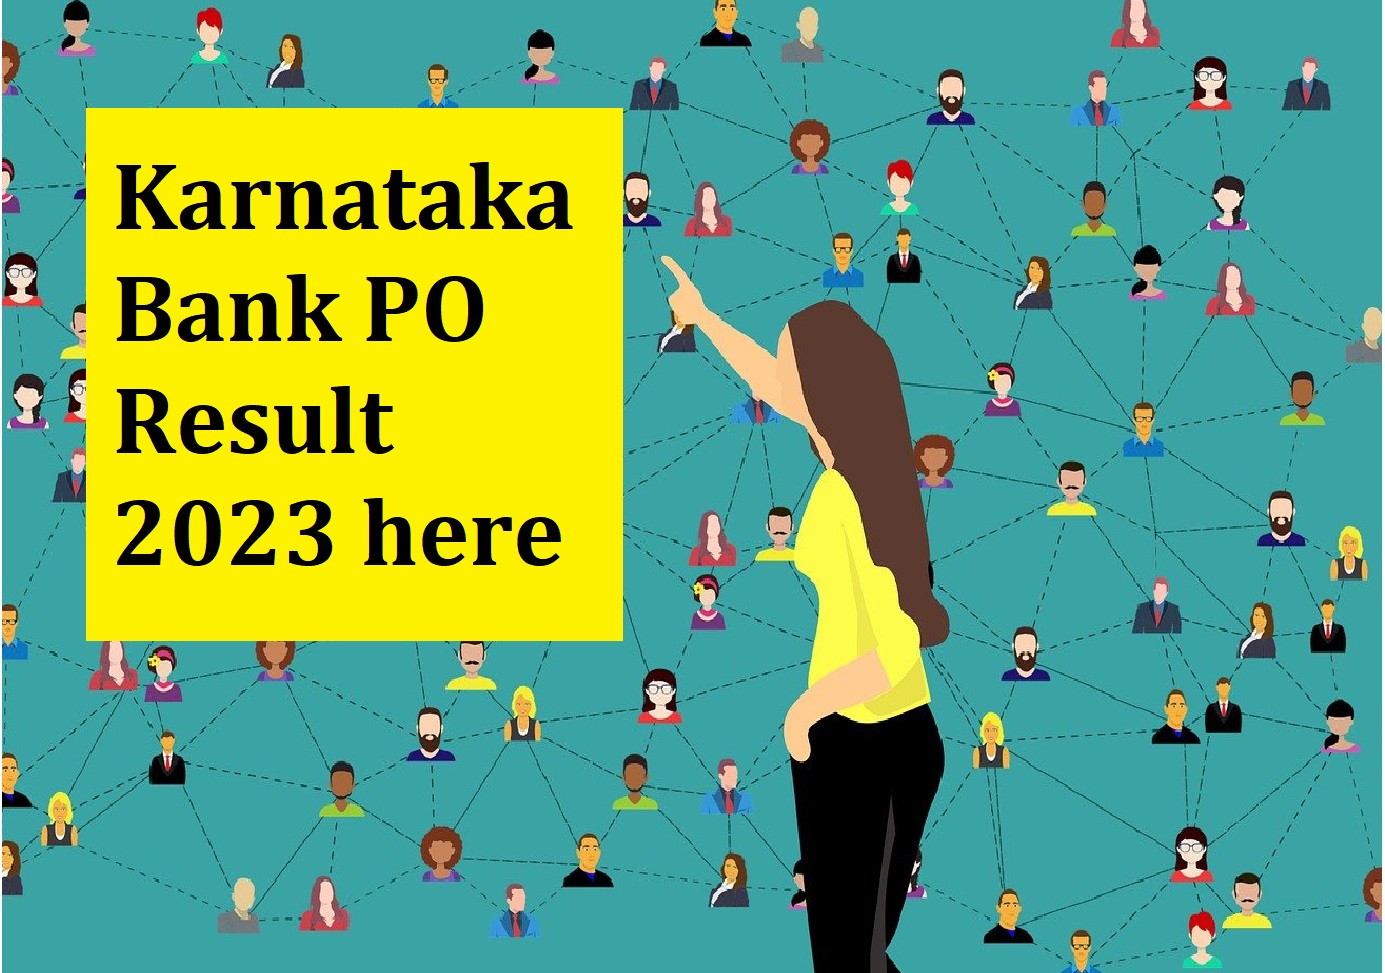 Karnataka Bank PO Result